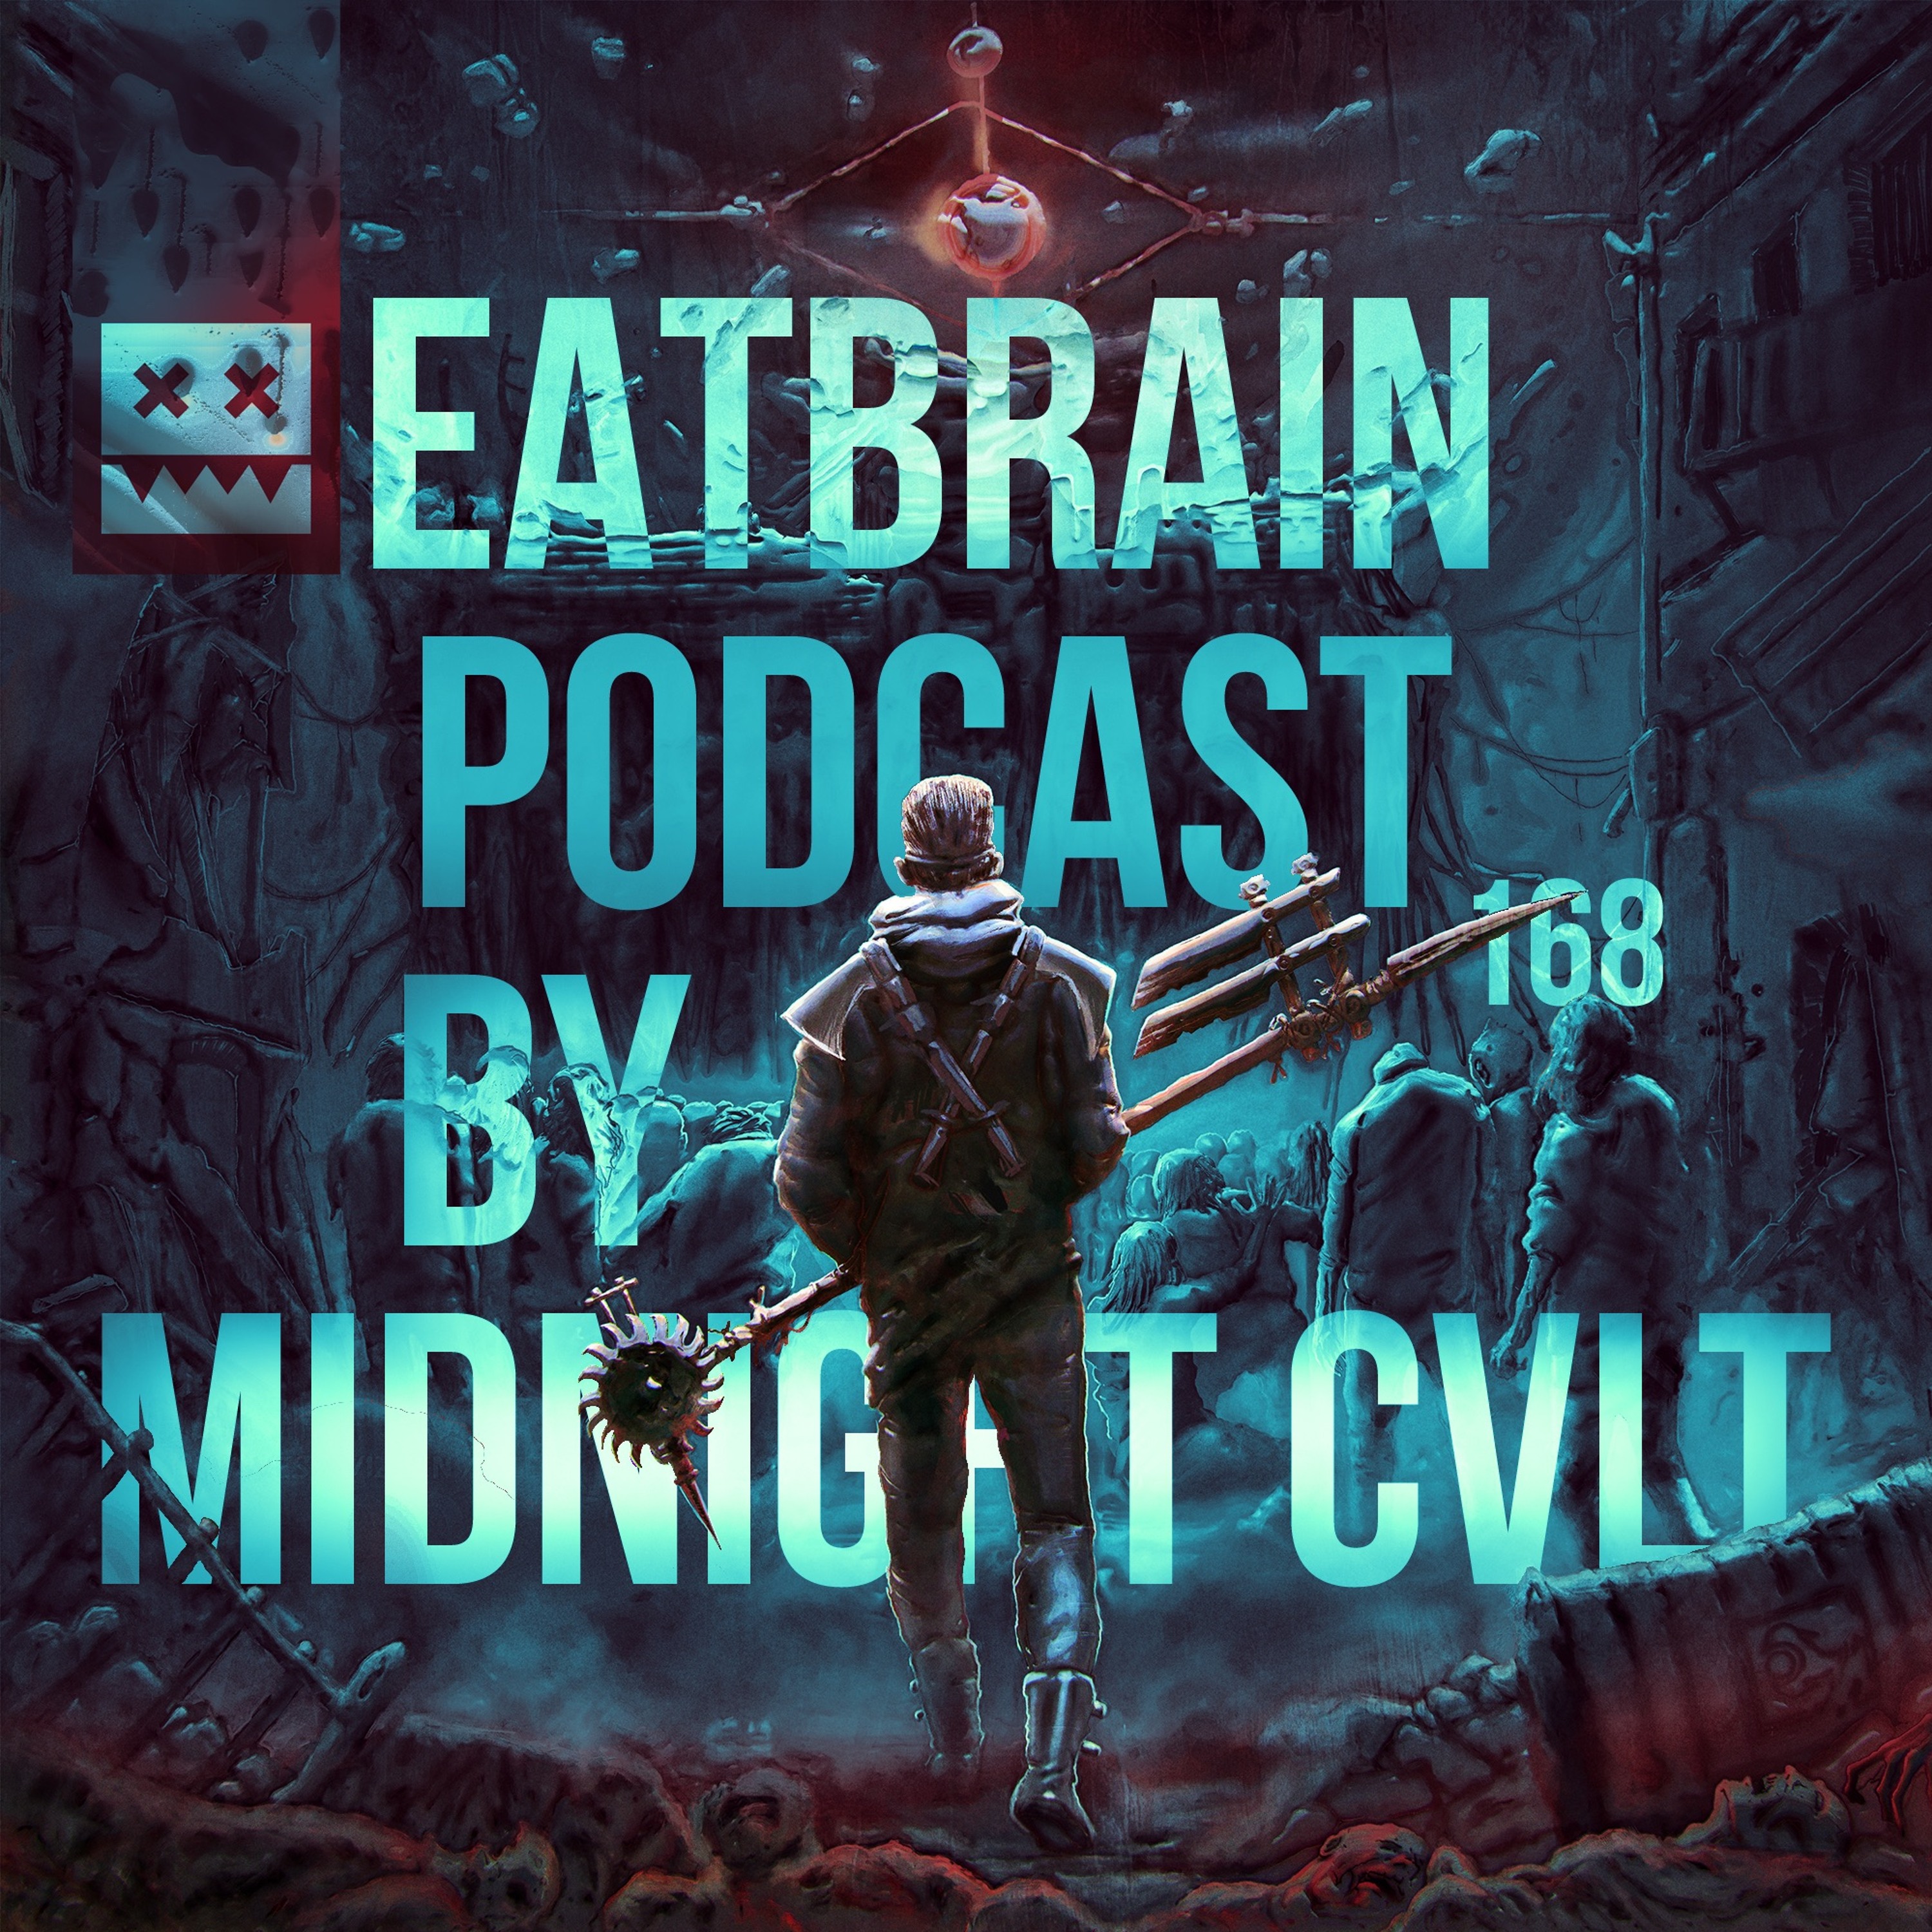 EATBRAIN Podcast 168 by MIDNIGHT CVLT